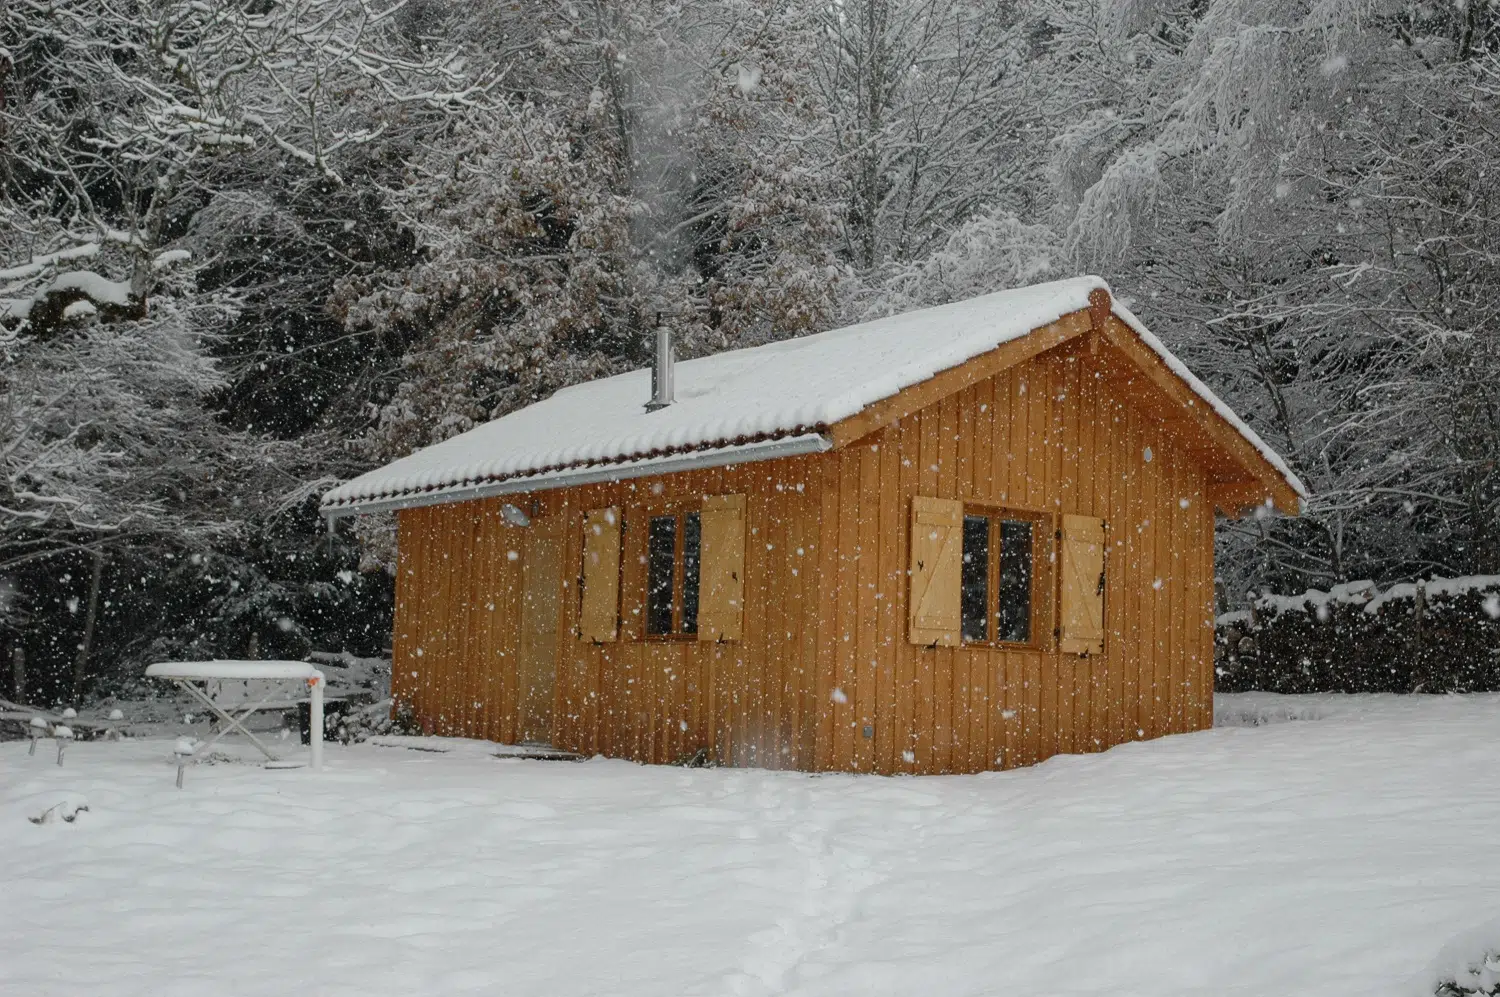 L'isolation d'une maison en bois en plein hiver